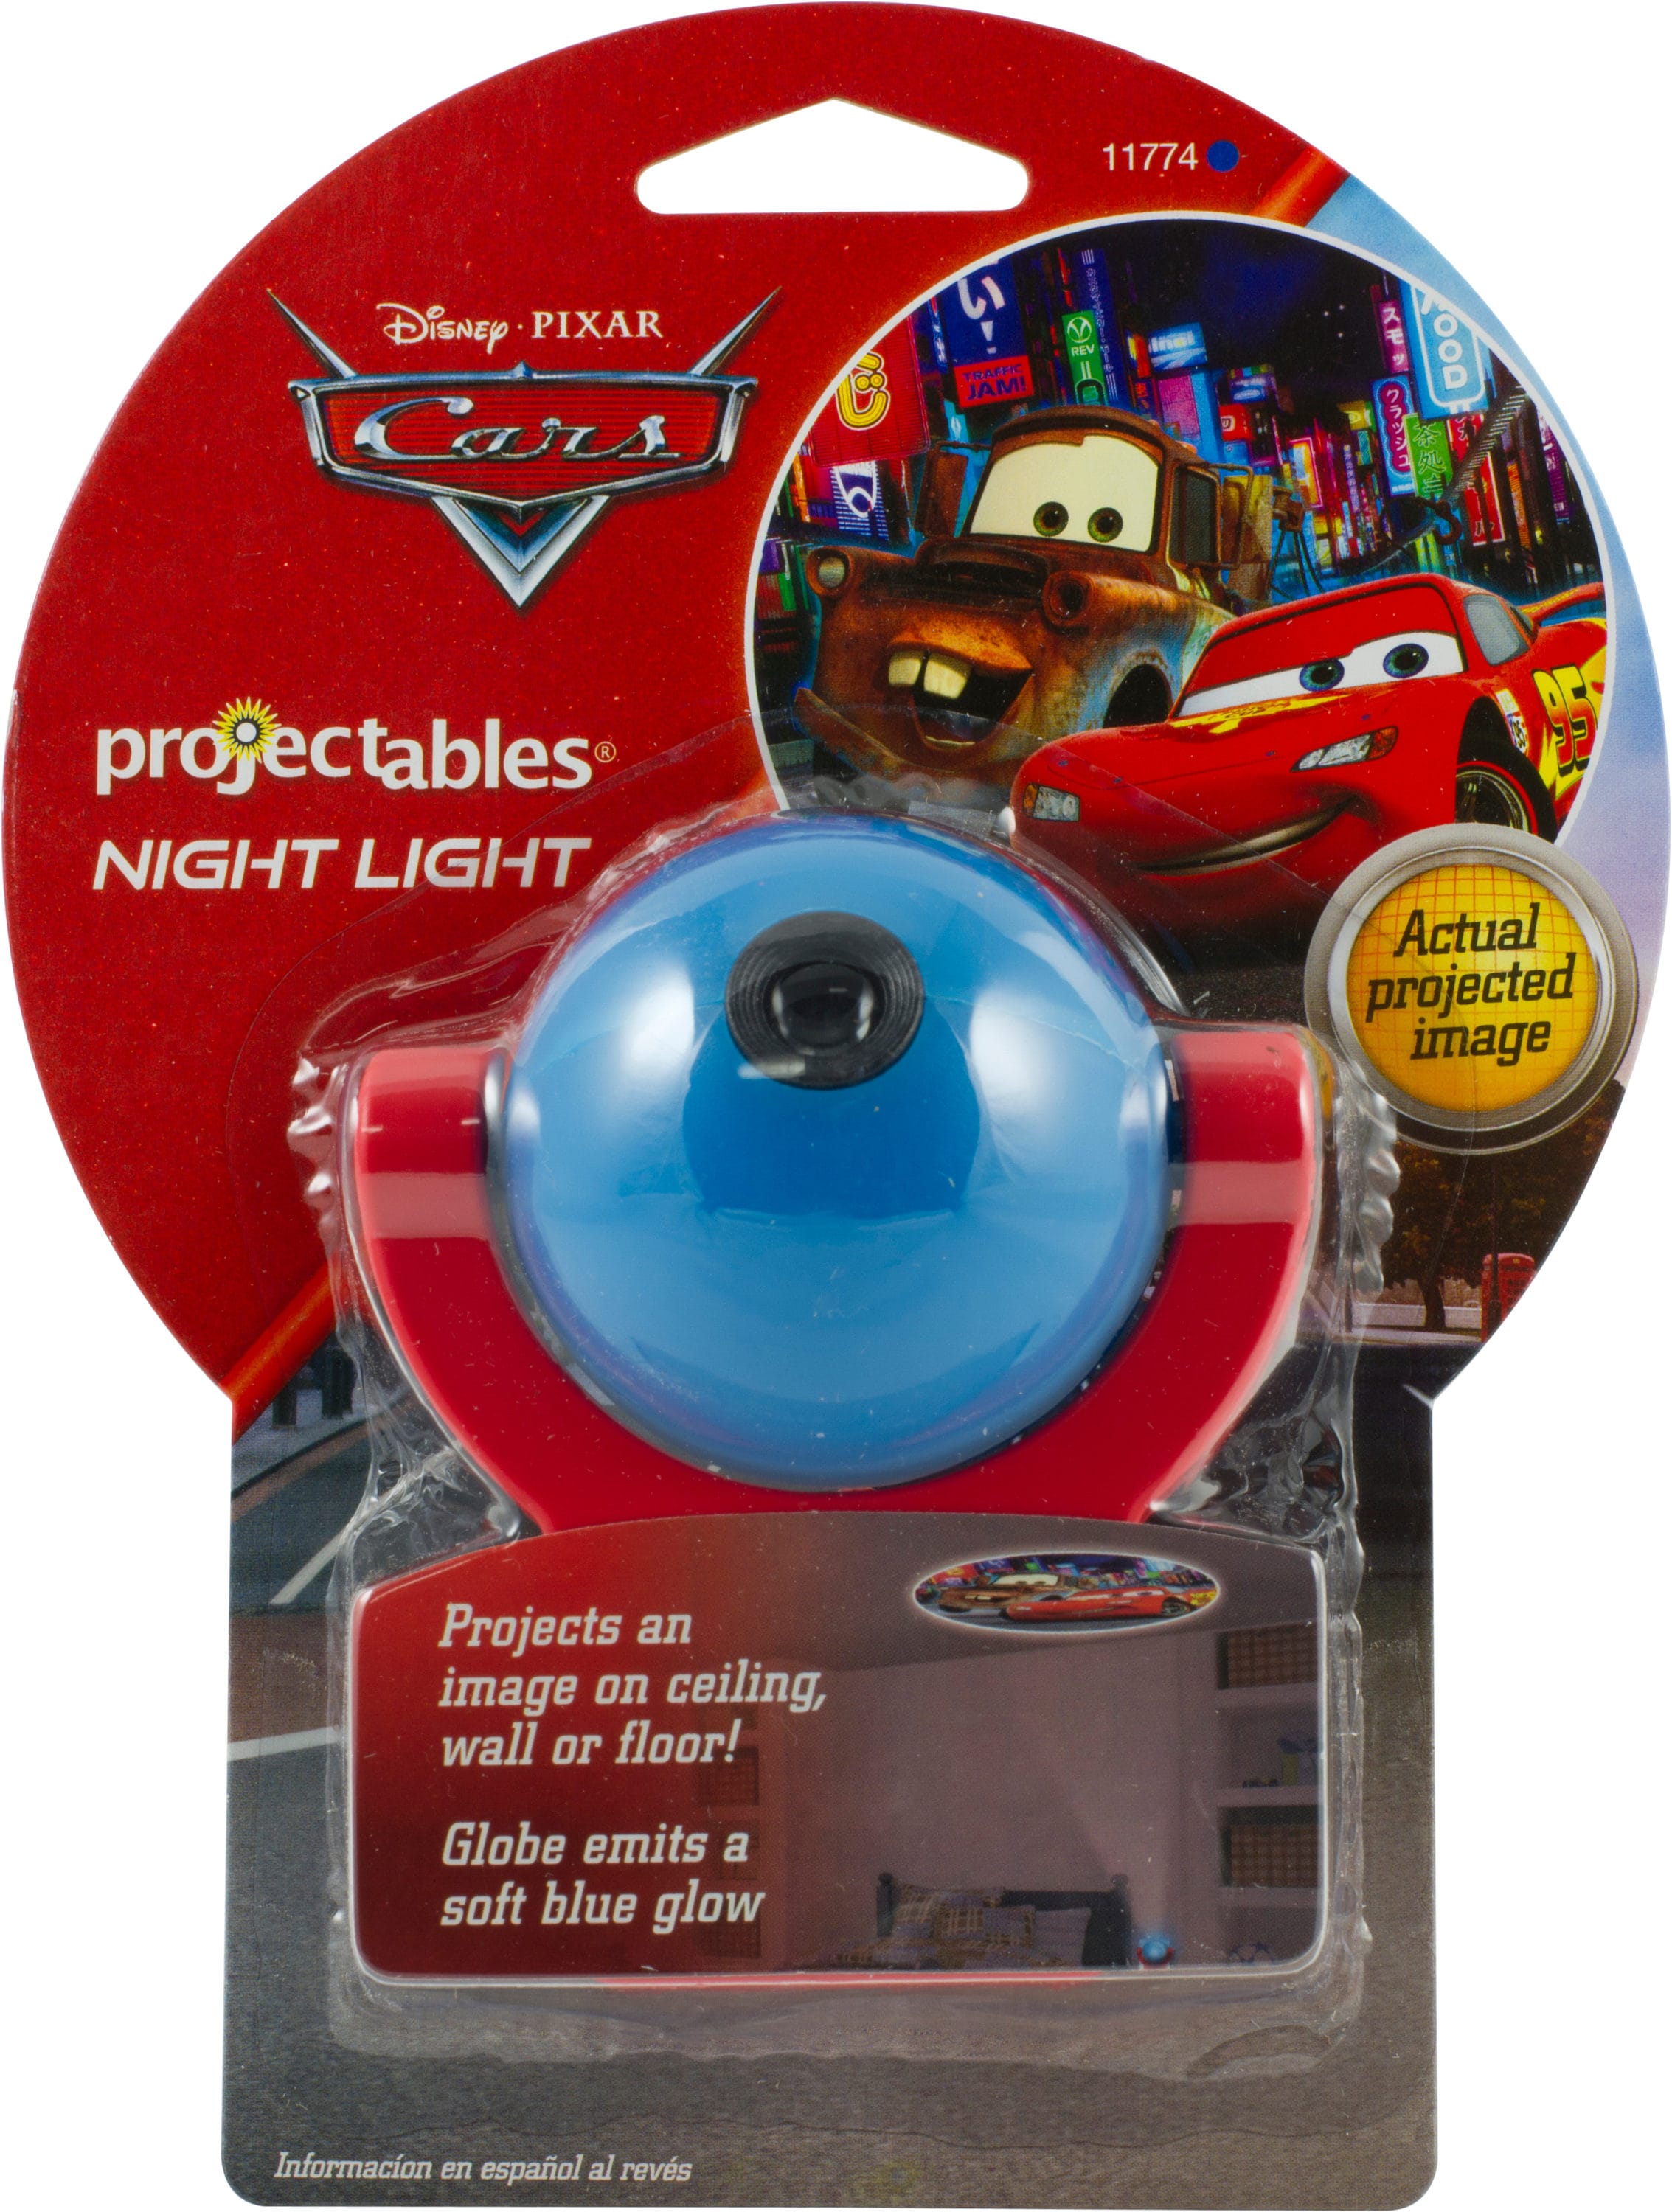 Free: DISNEY PIXAR CARS Lightning McQueen LED nightlight